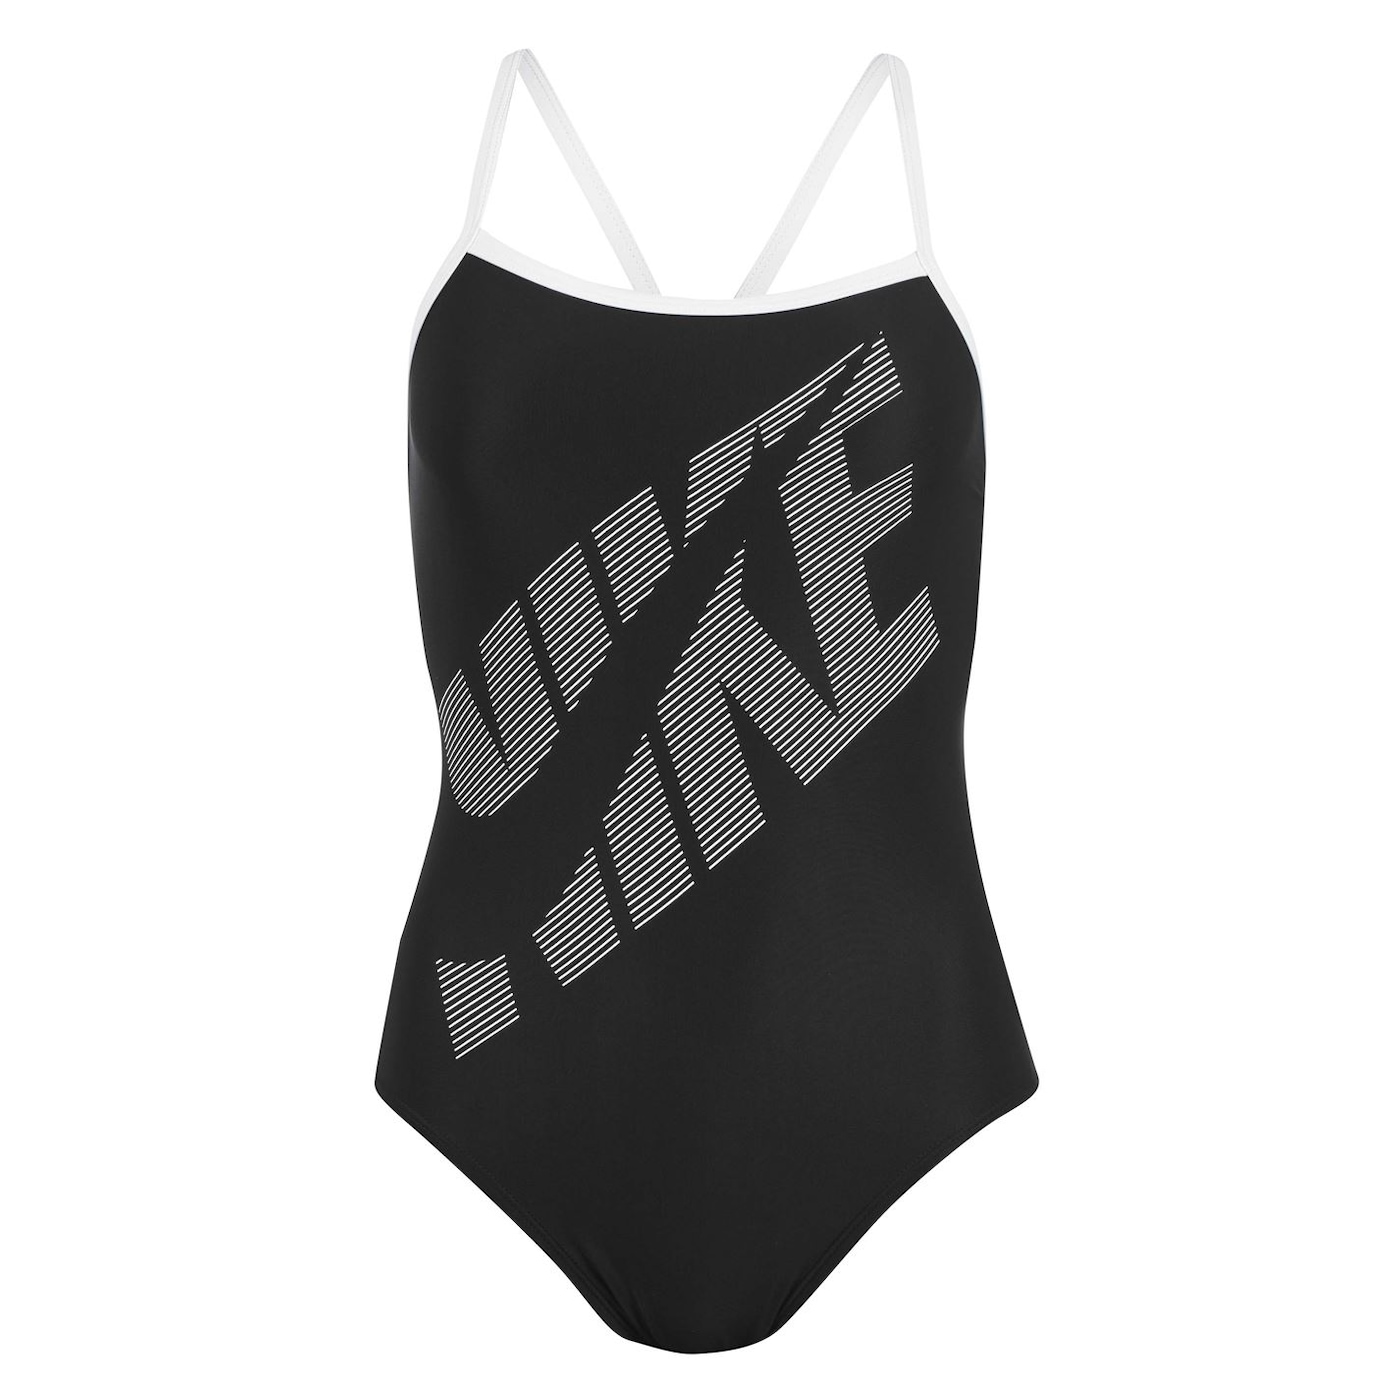 Жени  Дамско облекло  Цели бански & Половинки  Бански за плуване Nike Logo Racer Back Swimsuit Ladies 1206000-6771350